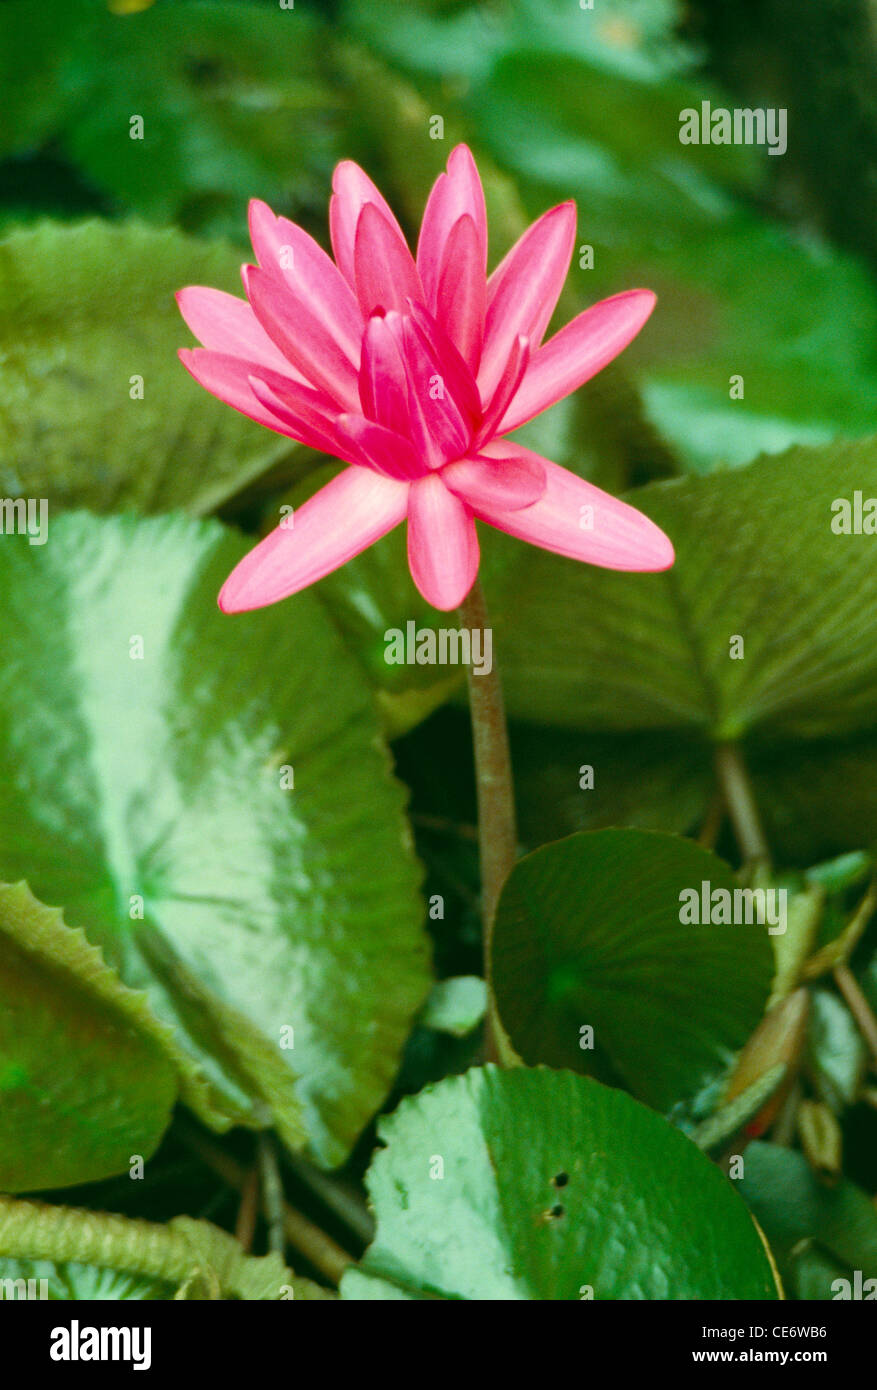 Fiore di loto rosa ; Nelumbo nucifera ; loto indiano ; loto sacro ; fagiolo indiano ; fagiolo egiziano ; india ; asia Foto Stock